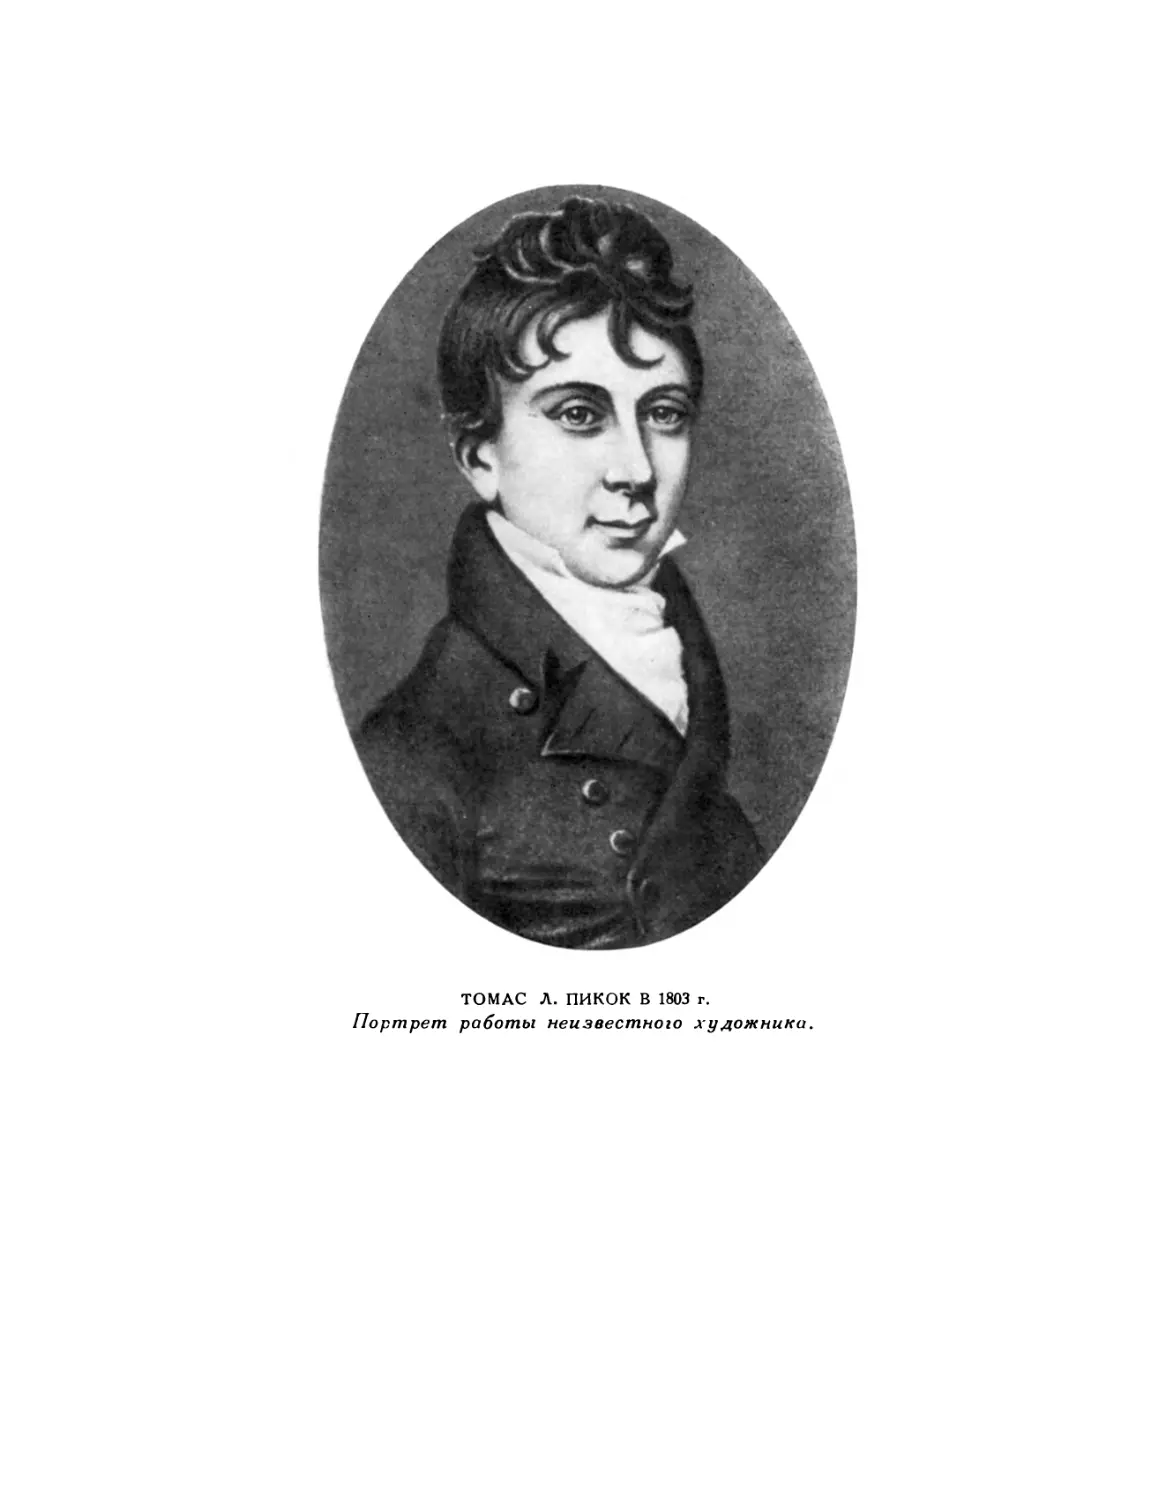 Вклейка. Томас Л. Пикок в 1803 г. Портрет работы неизвестного художника